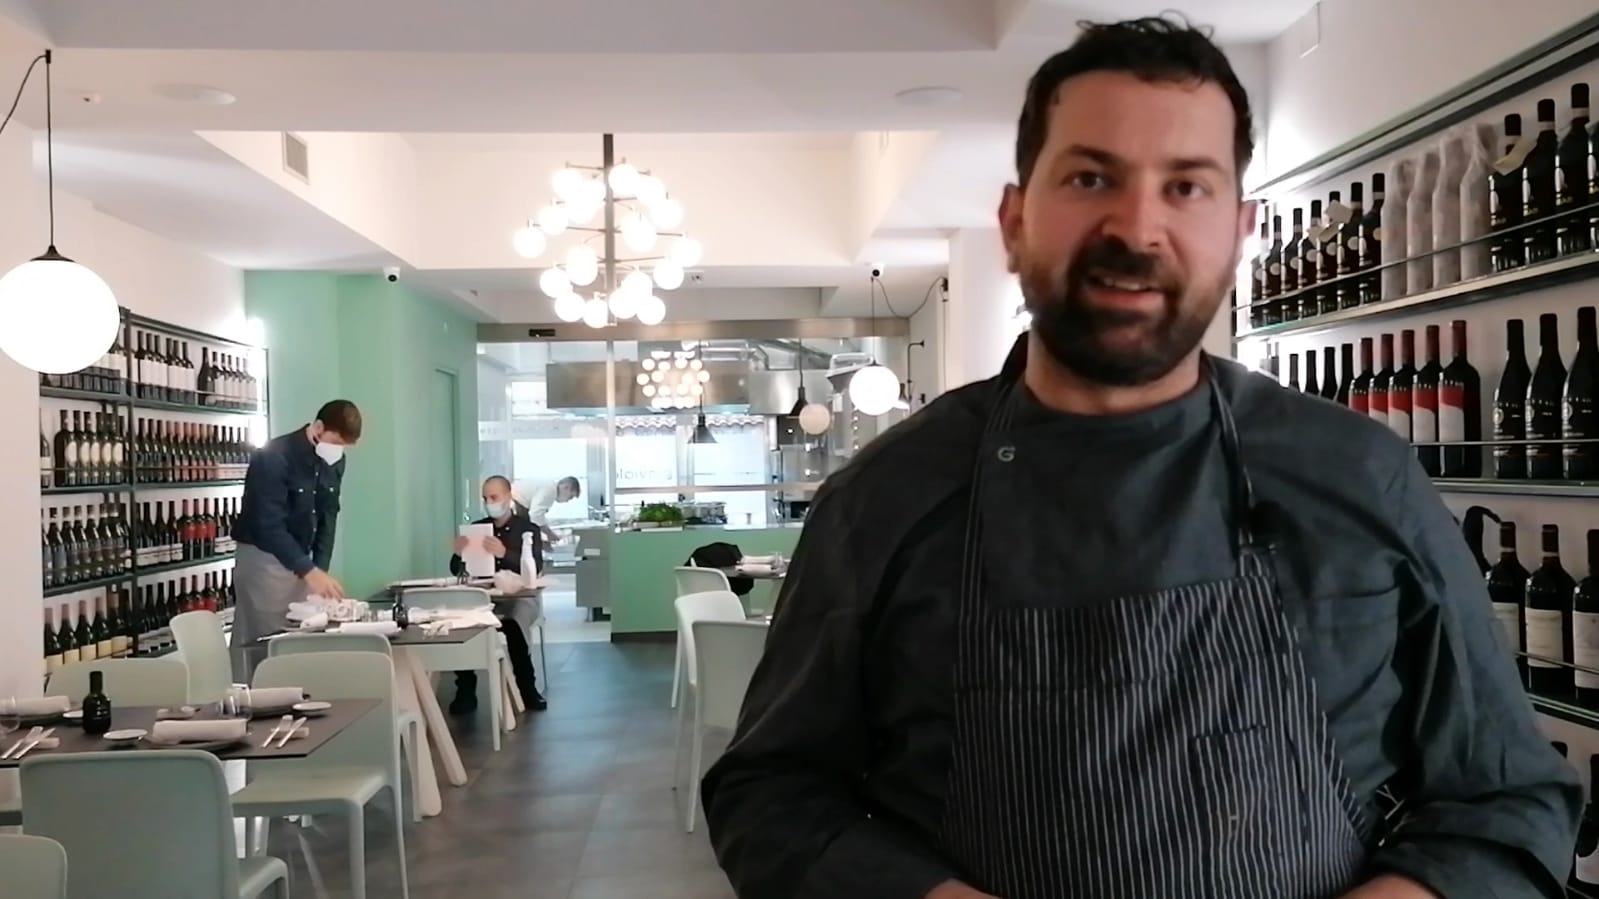 Gioviale Espressioni in Cucina: la nuova avventura di Carmine Pacilio